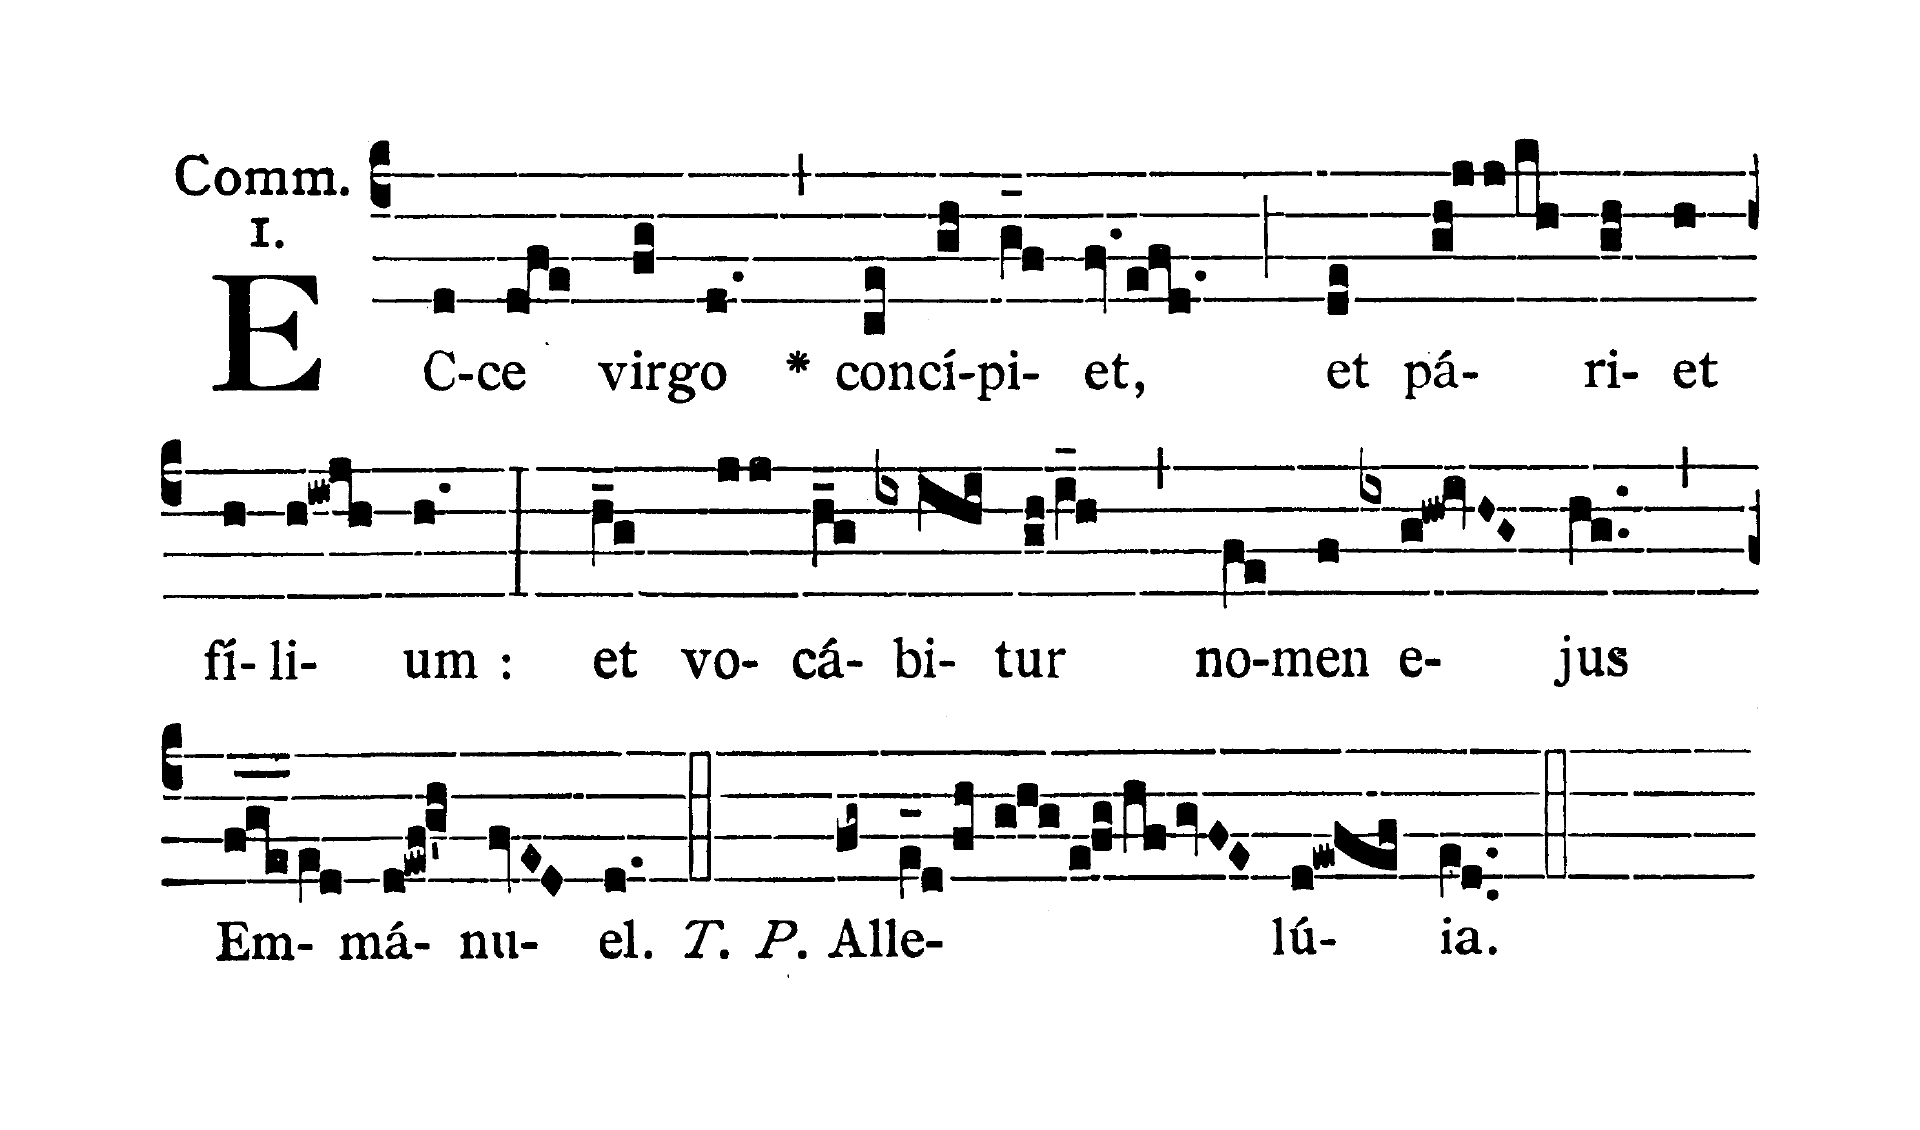 Feria IV Quatuor Temporum Adventus - Communio (Ecce Virgo concipiet)